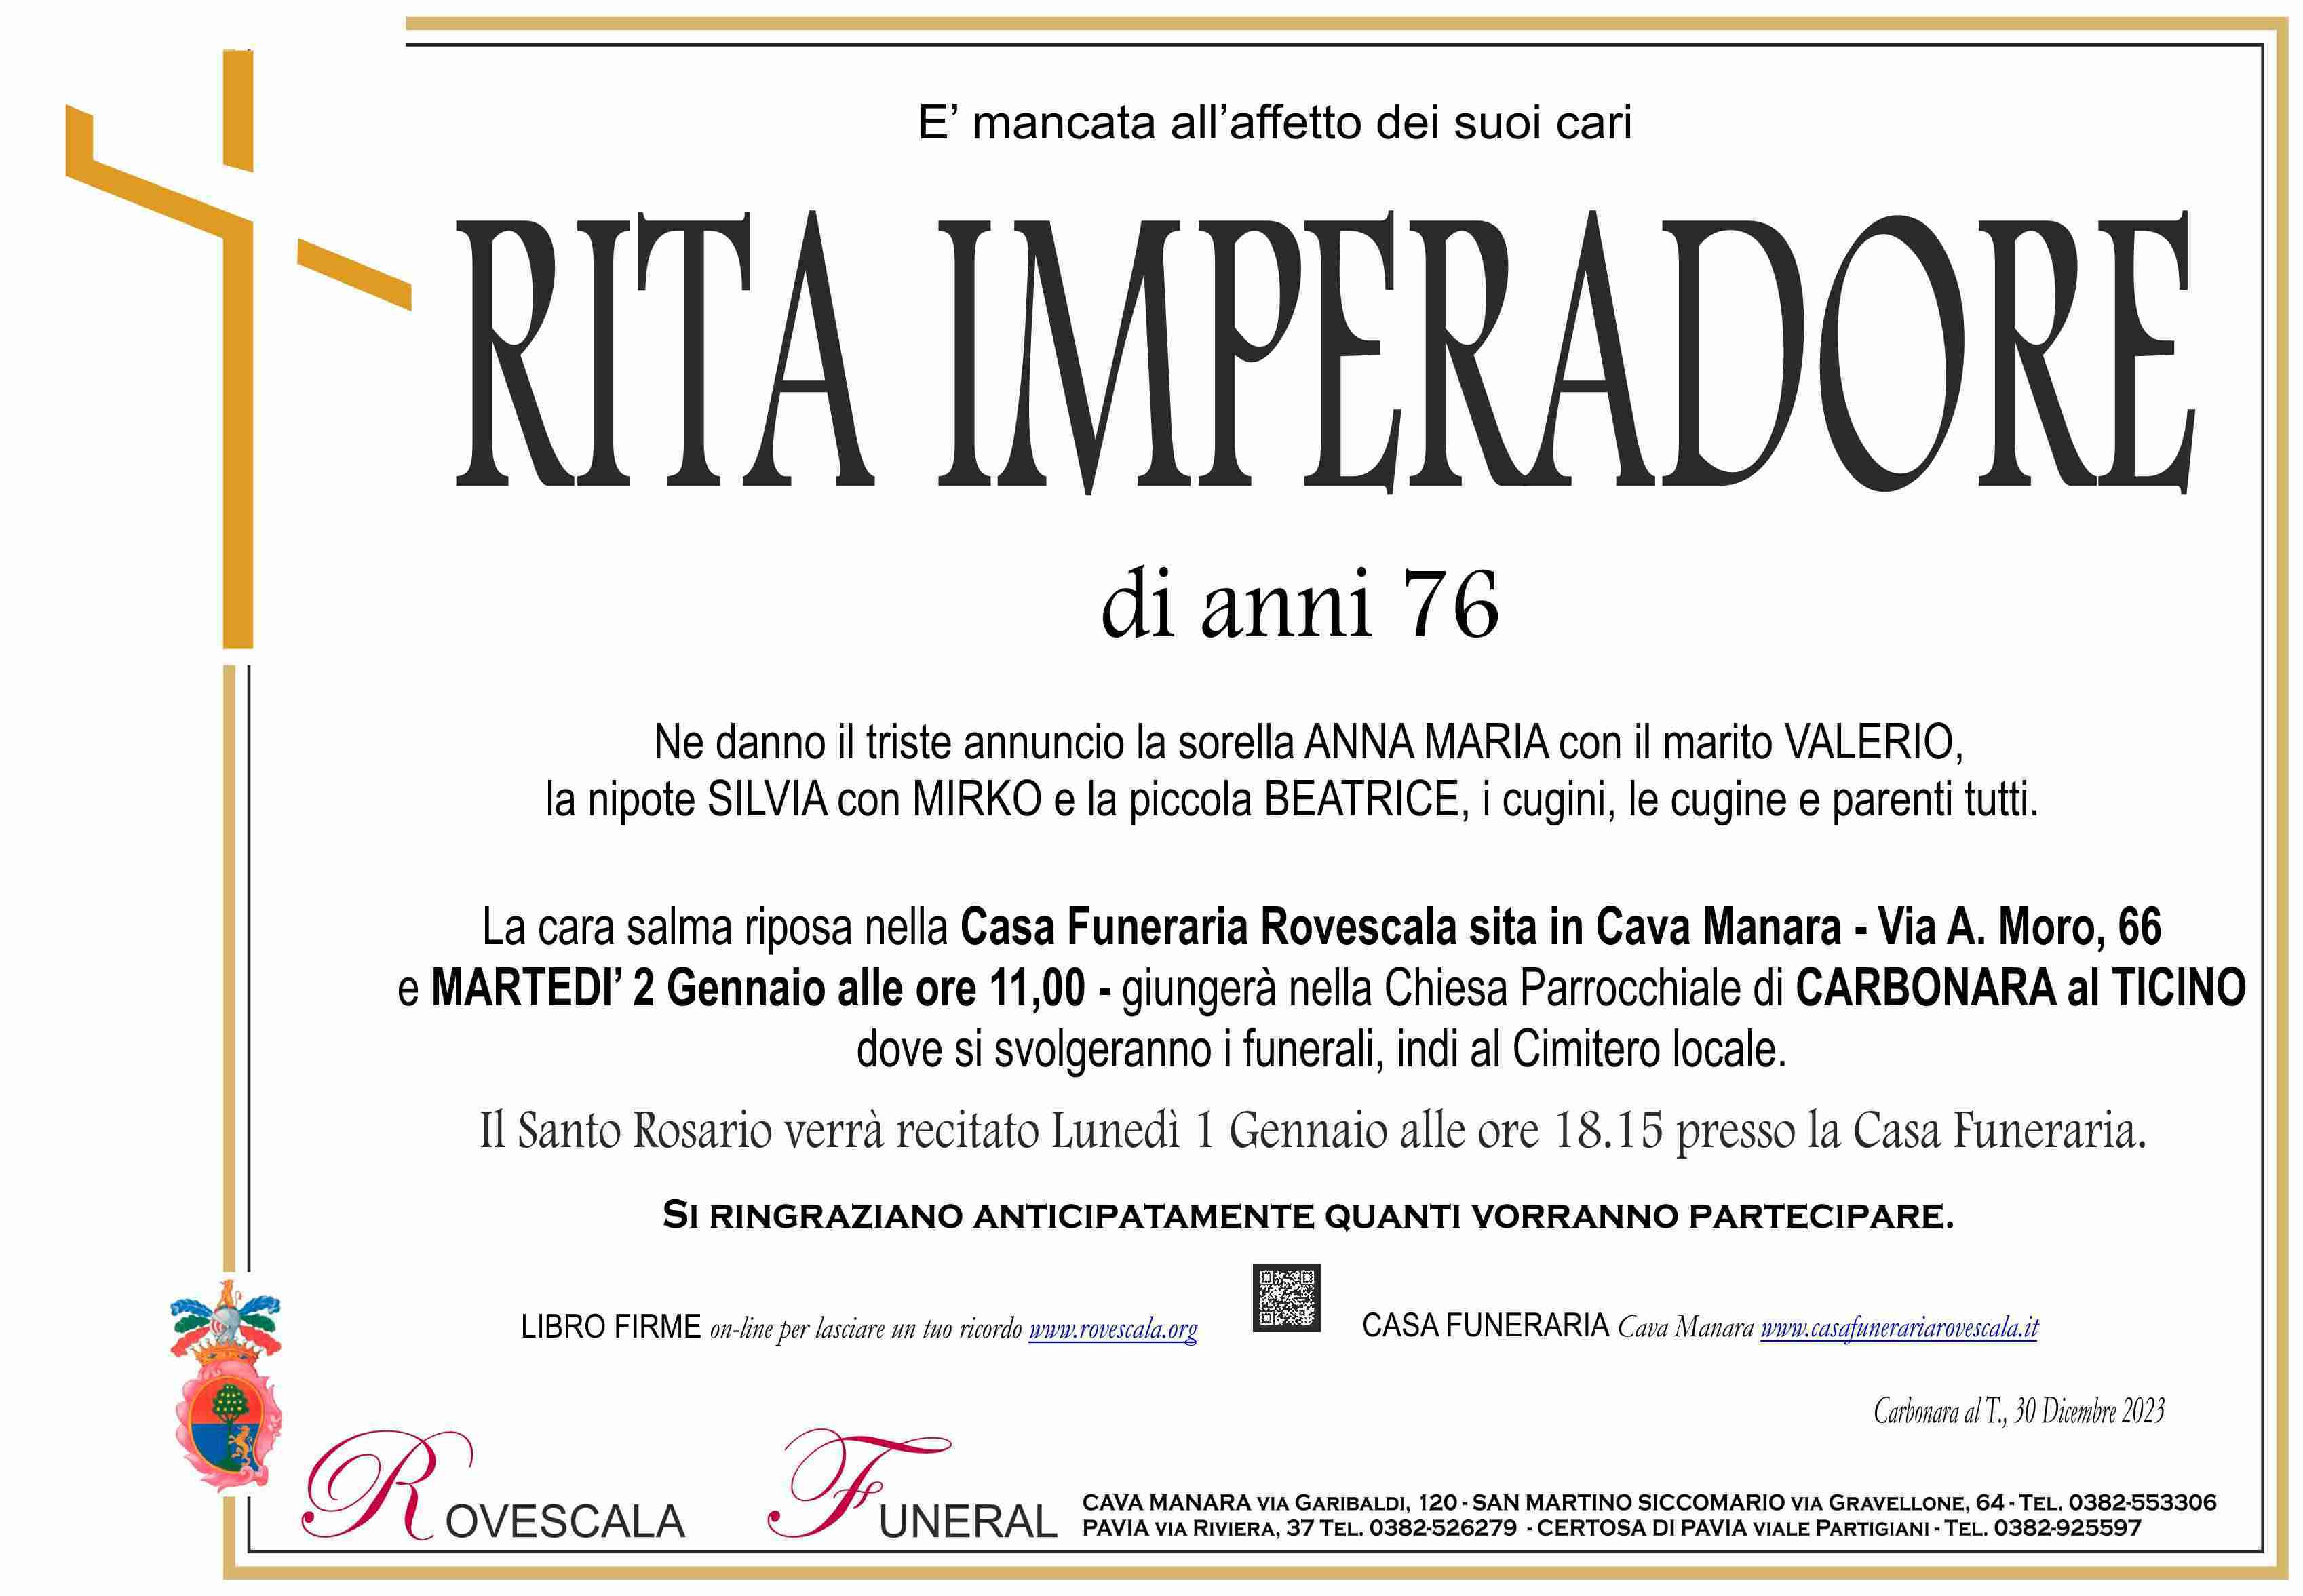 Rita Imperadore